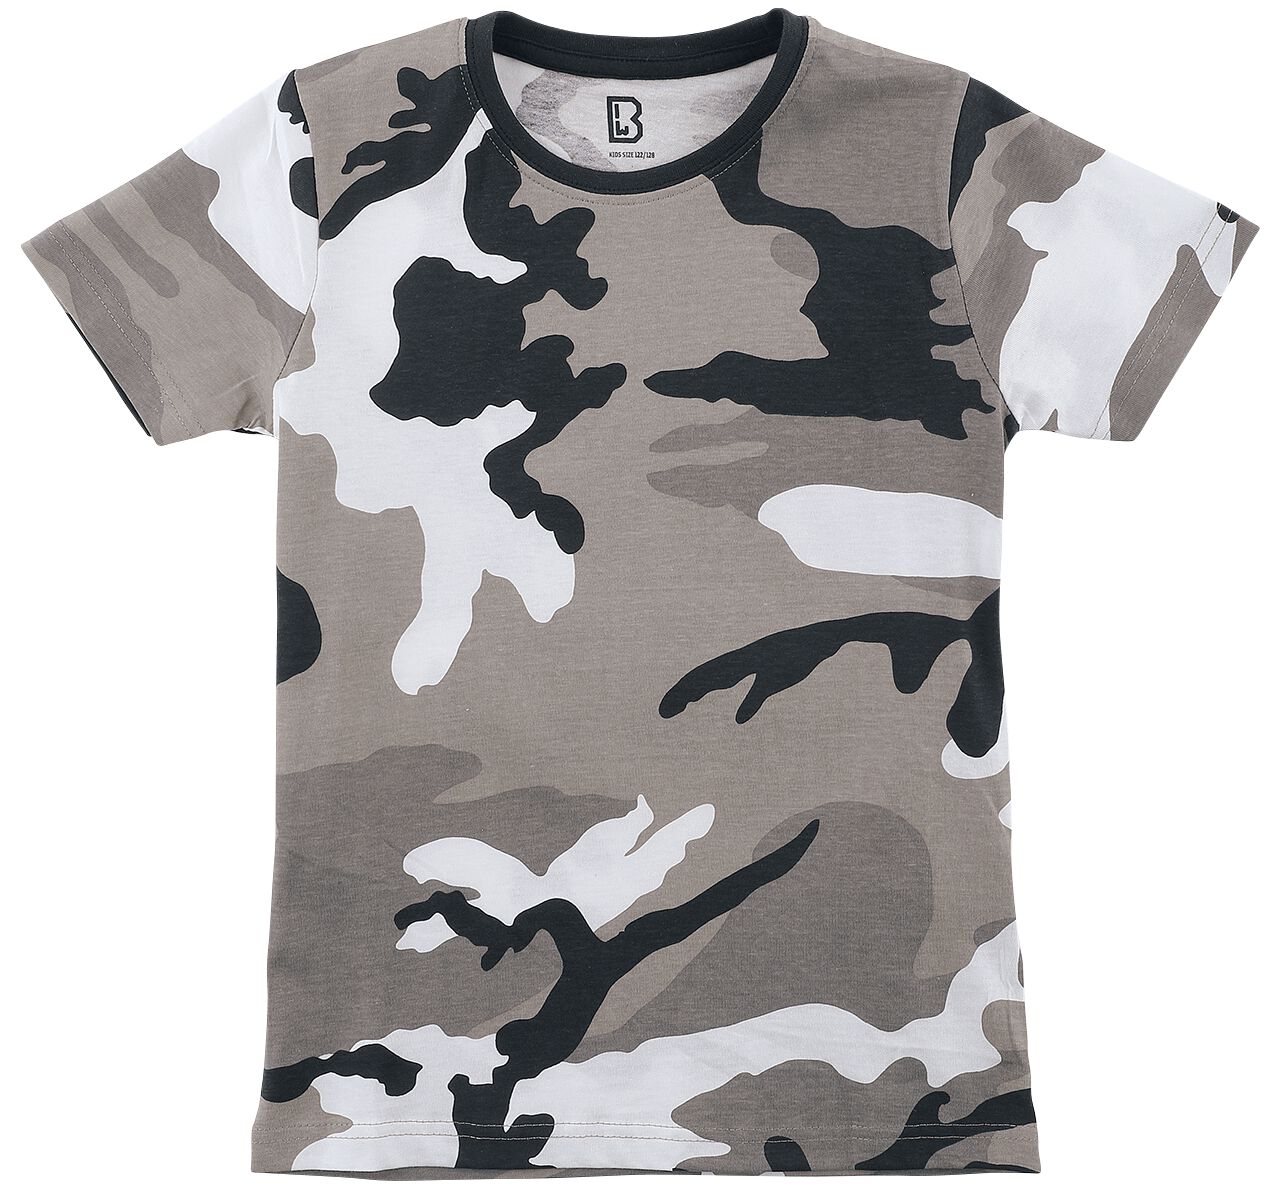 Brandit - Camouflage/Flecktarn T-Shirt für Kinder - Kids T-Shirt - für Jungen - urban